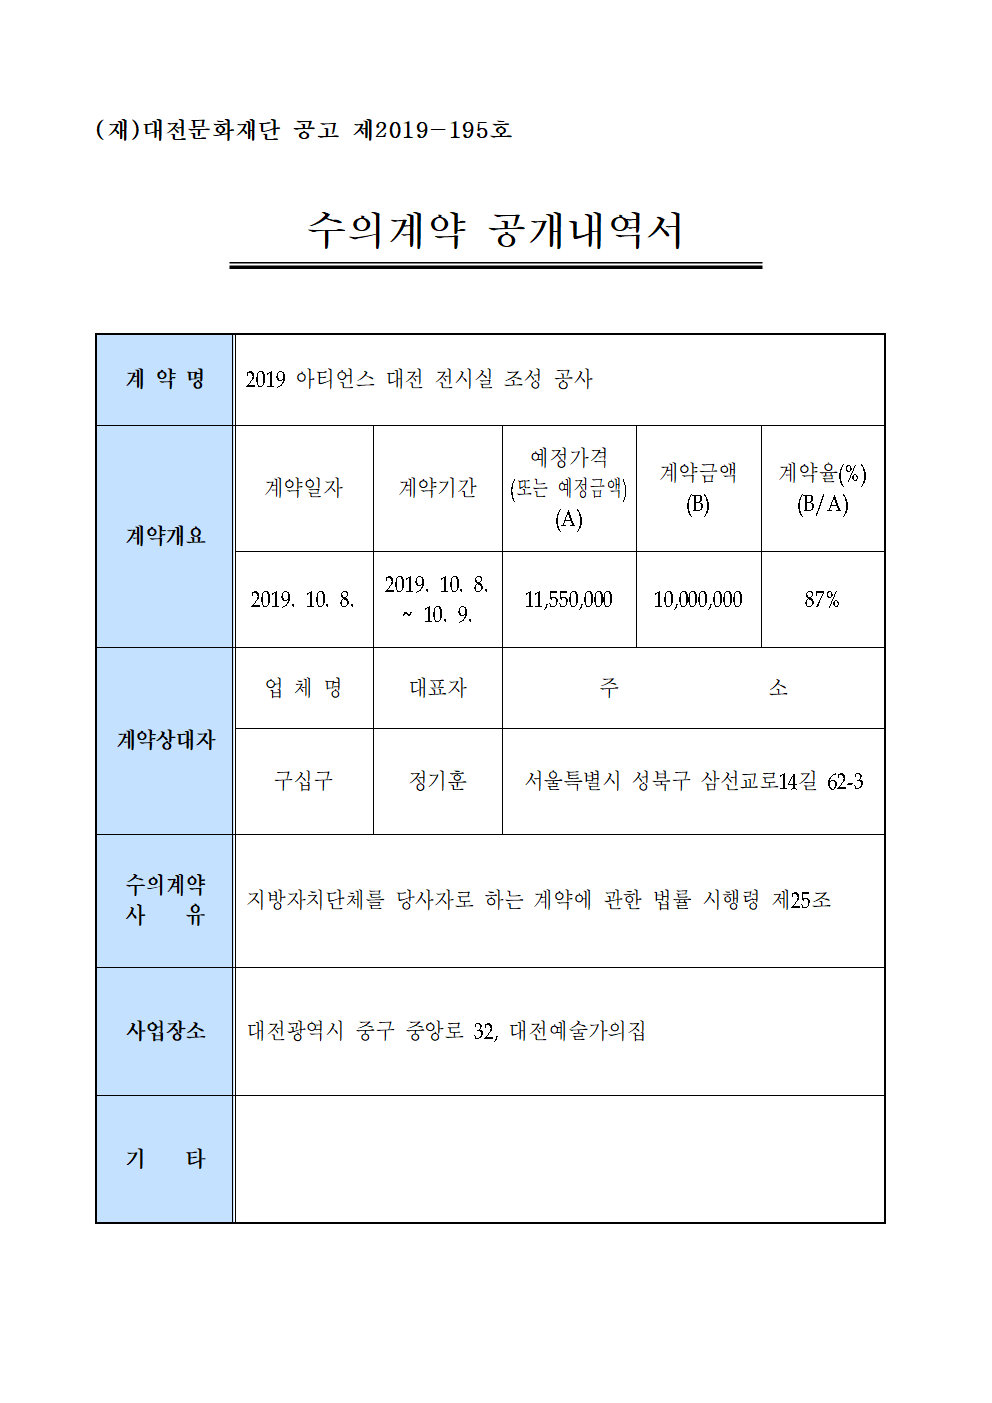 2019 아티언스 대전 전시실 조성 공사 용역 수의계약 내역 공개